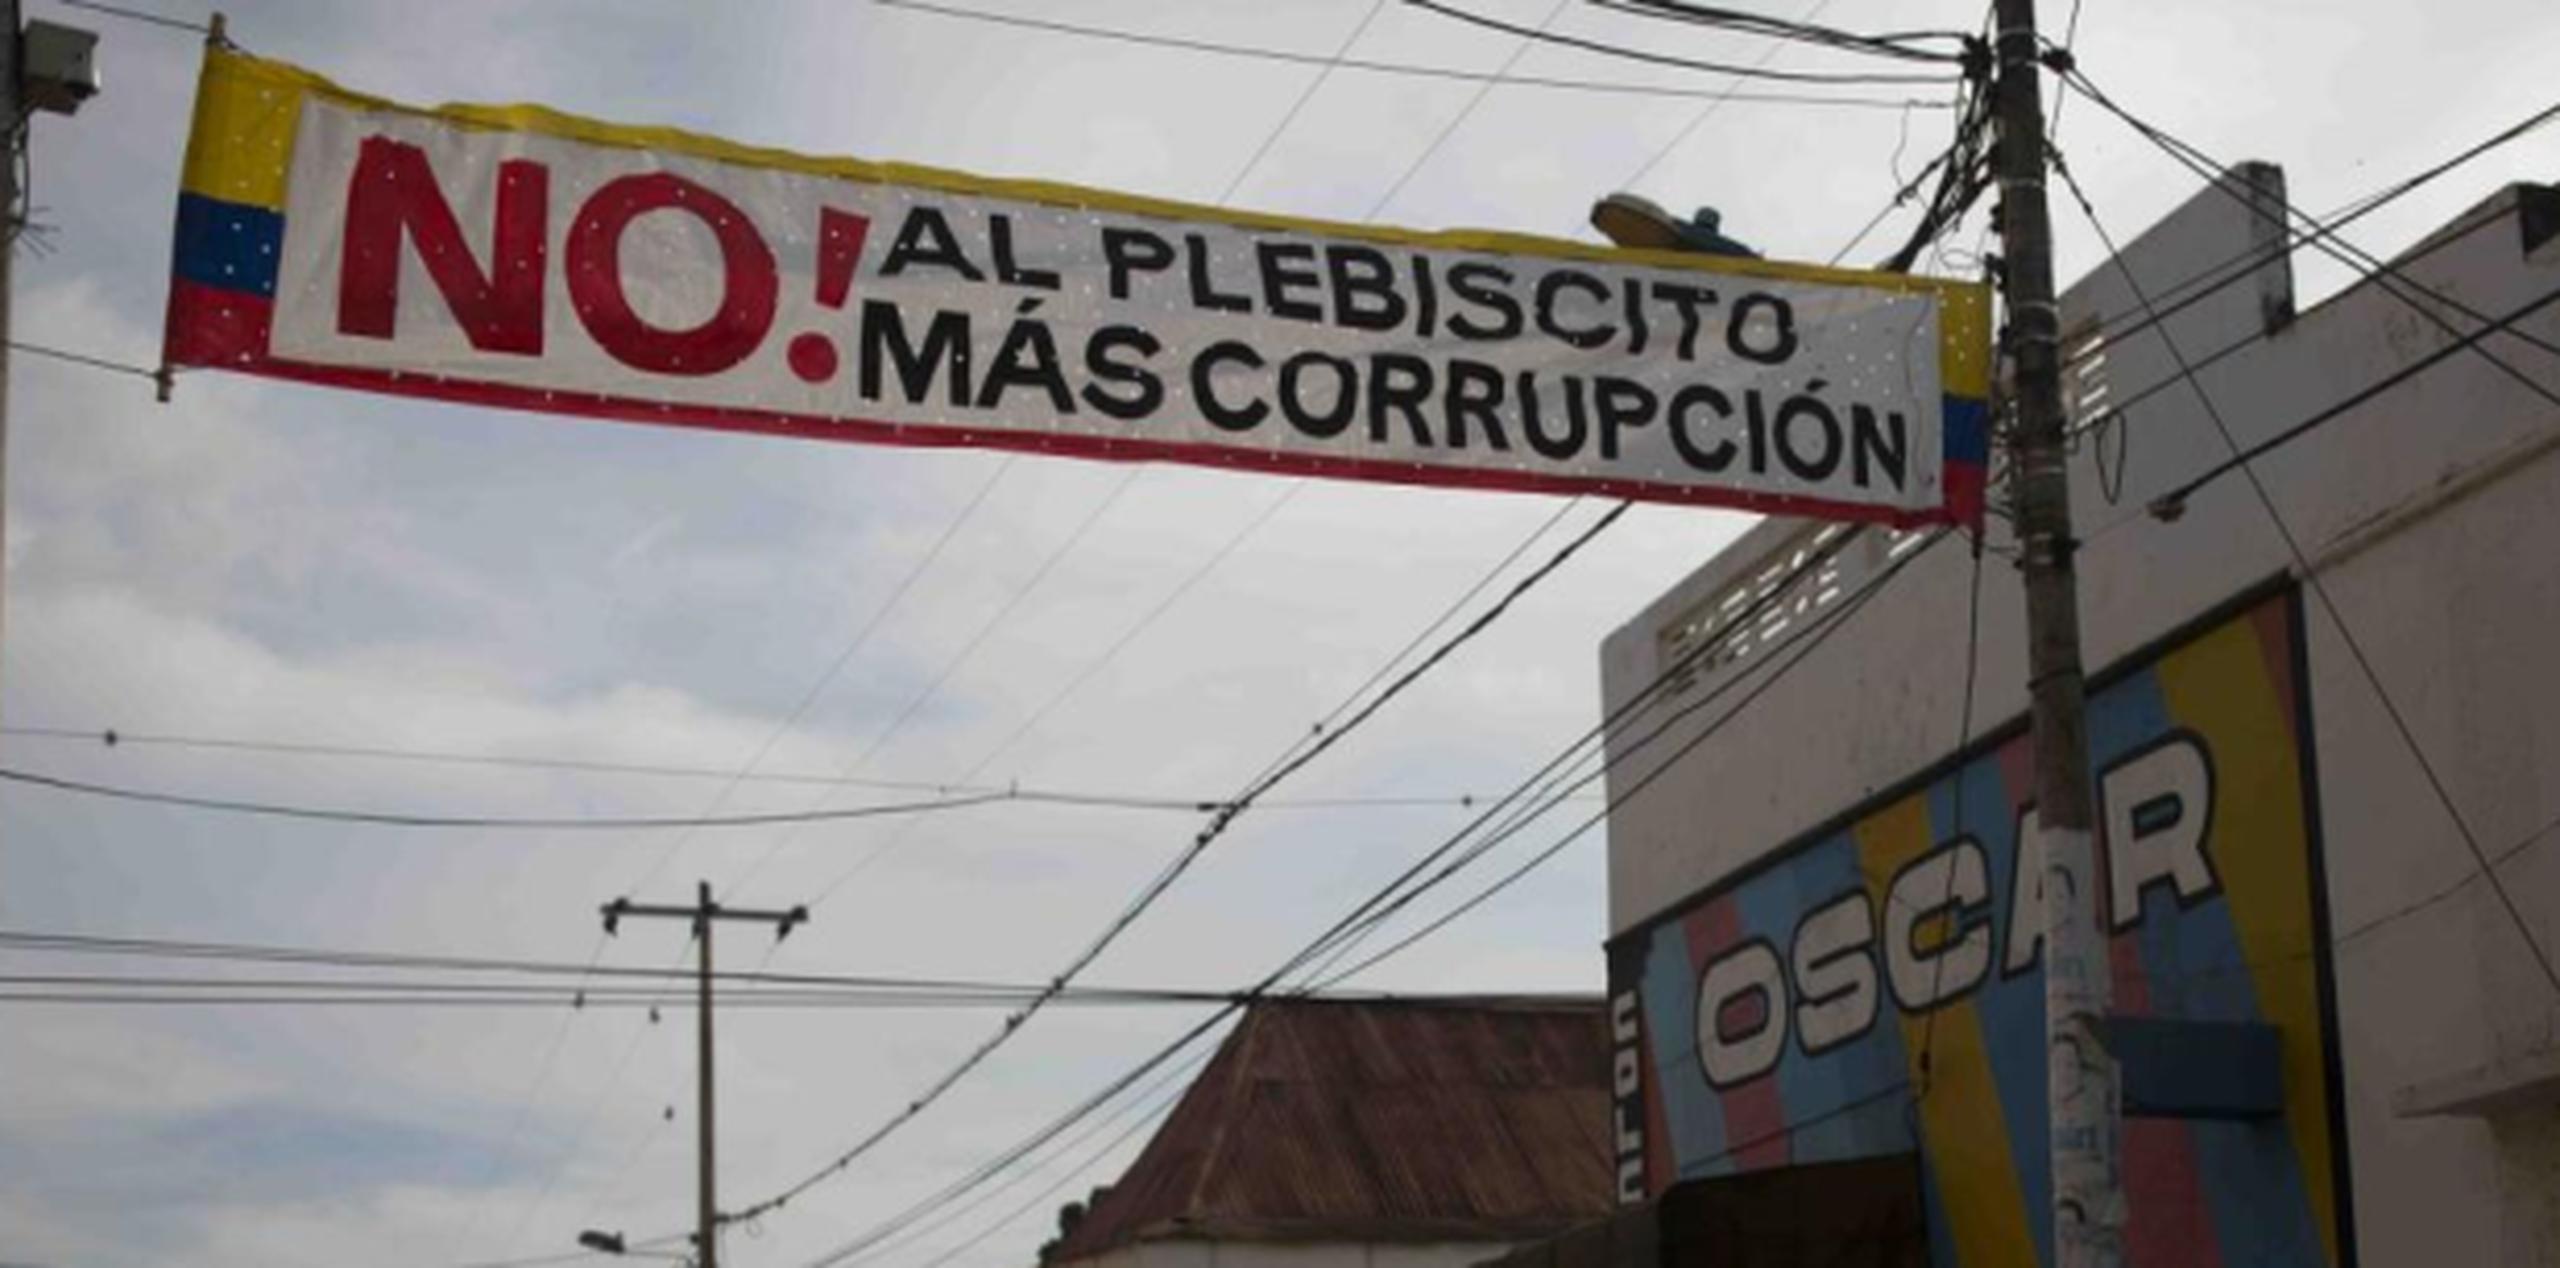 Un cruzacalle en la ciudad El Carmen de Bolívar, en Colombia, hace alusión a la opción del "No" en el plebiscito para avalar el acuerdo de paz entre el gobierno y las FARC. (Foto/Xavier Araujo)